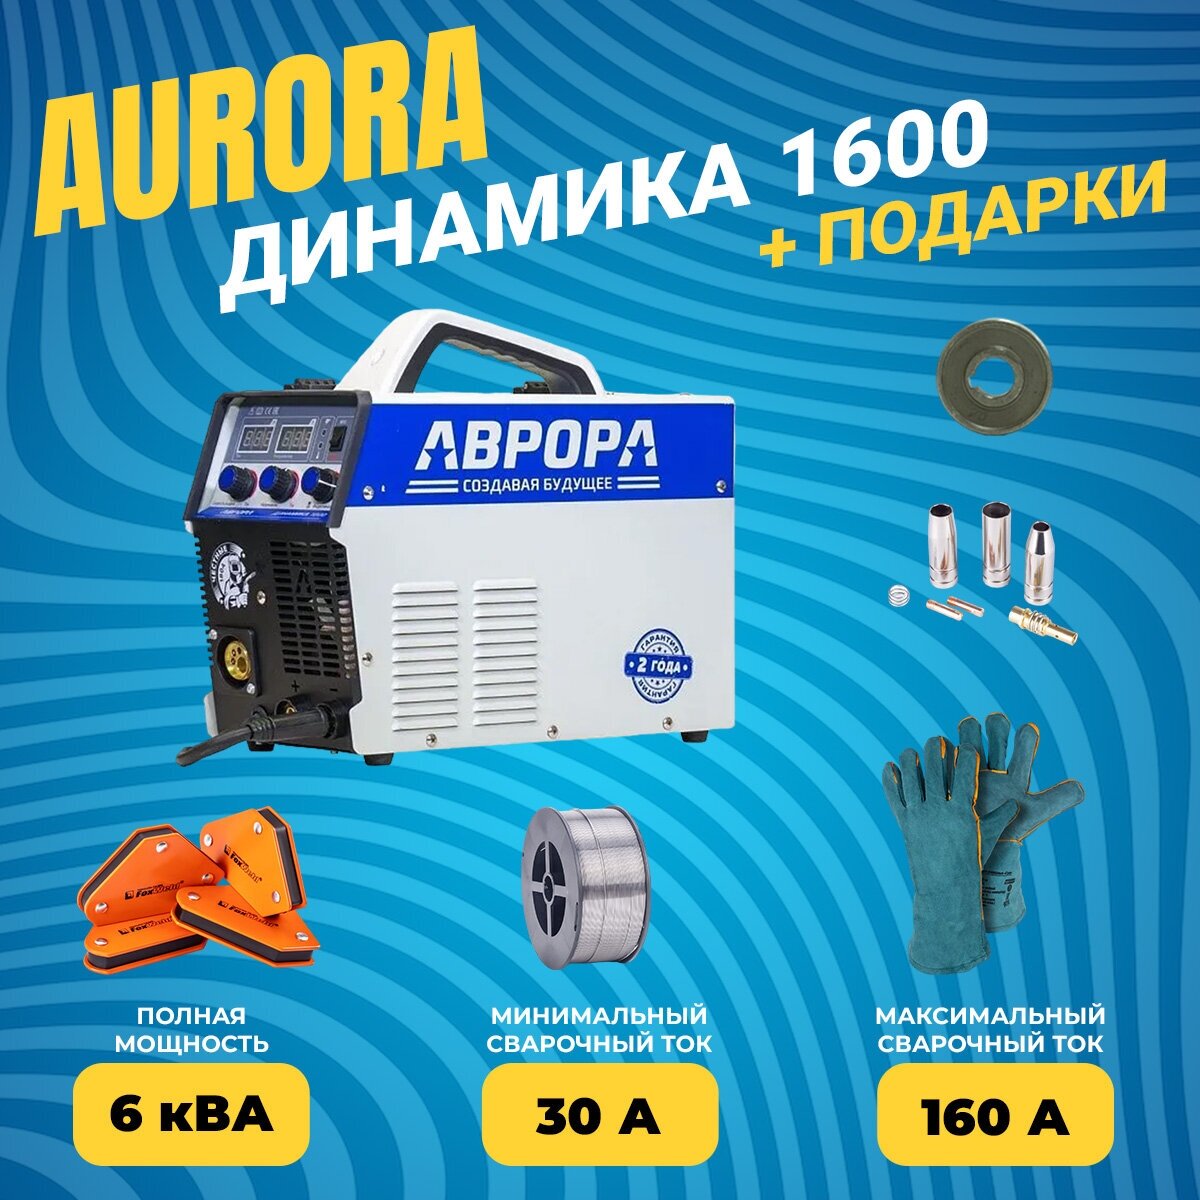 Сварочный полуавтомат Аврора / Aurora Динамика 1600 (7229077)+Подарки(краги 6114 ролик пор провол пор уголки 5391 расх. MIG-15)